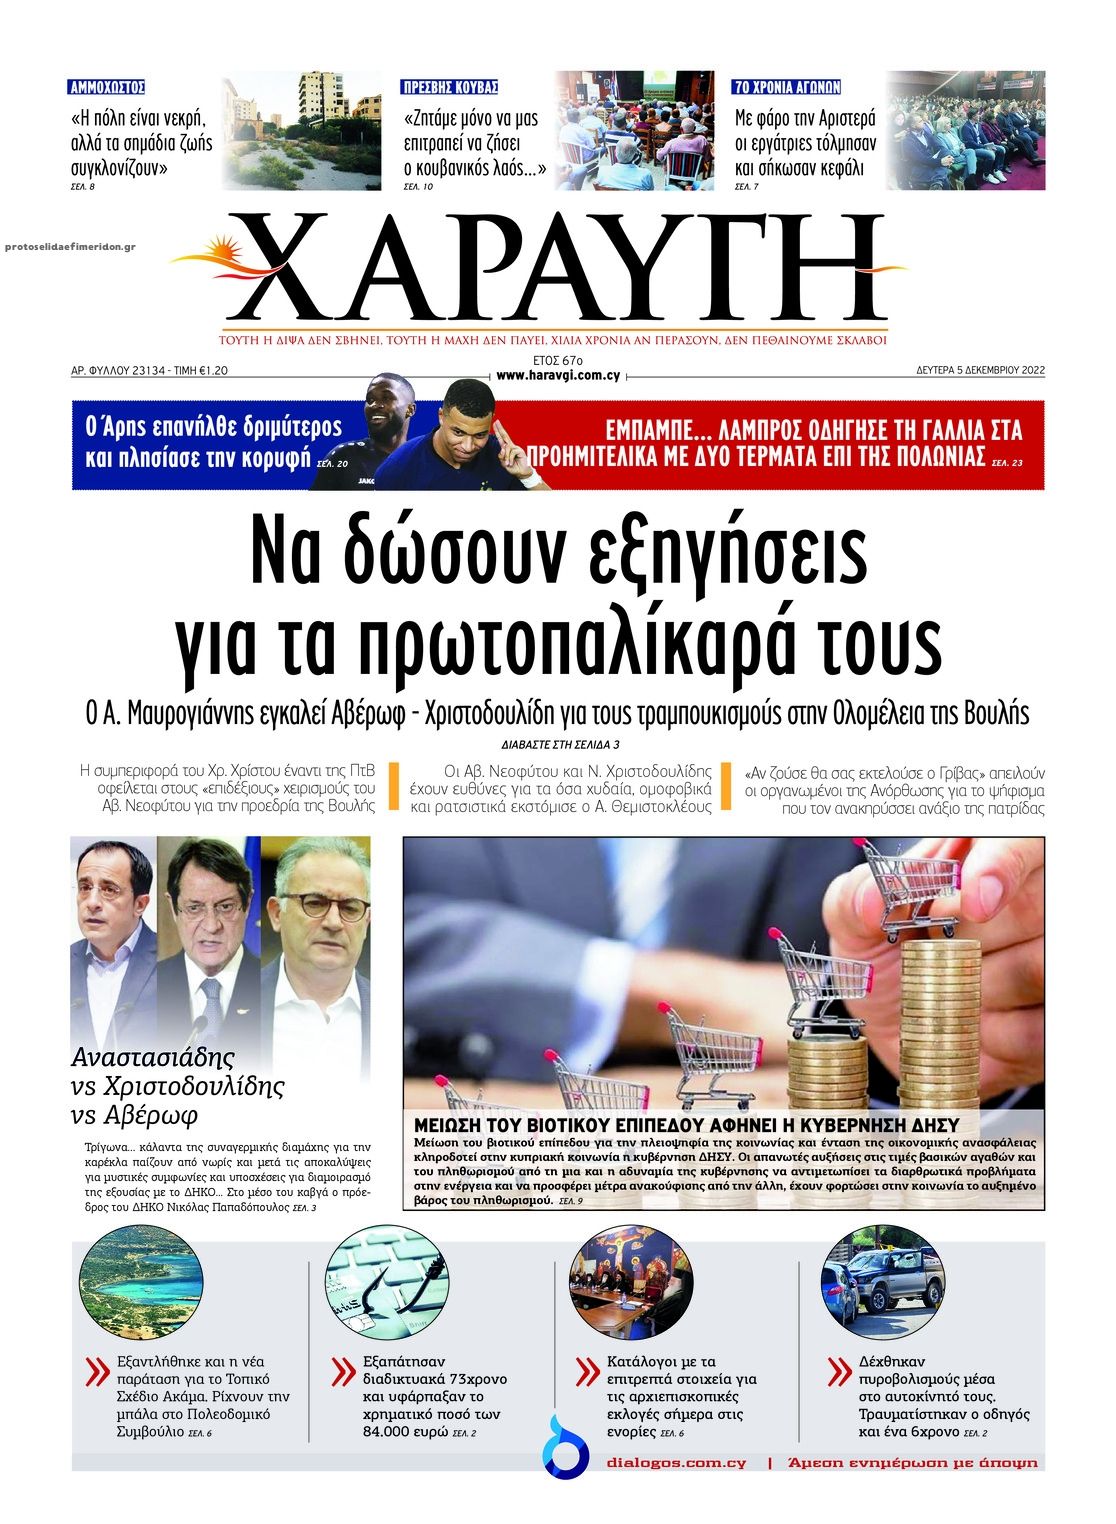 Πρωτοσέλιδο εφημερίδας Χαραυγή Κυπρου